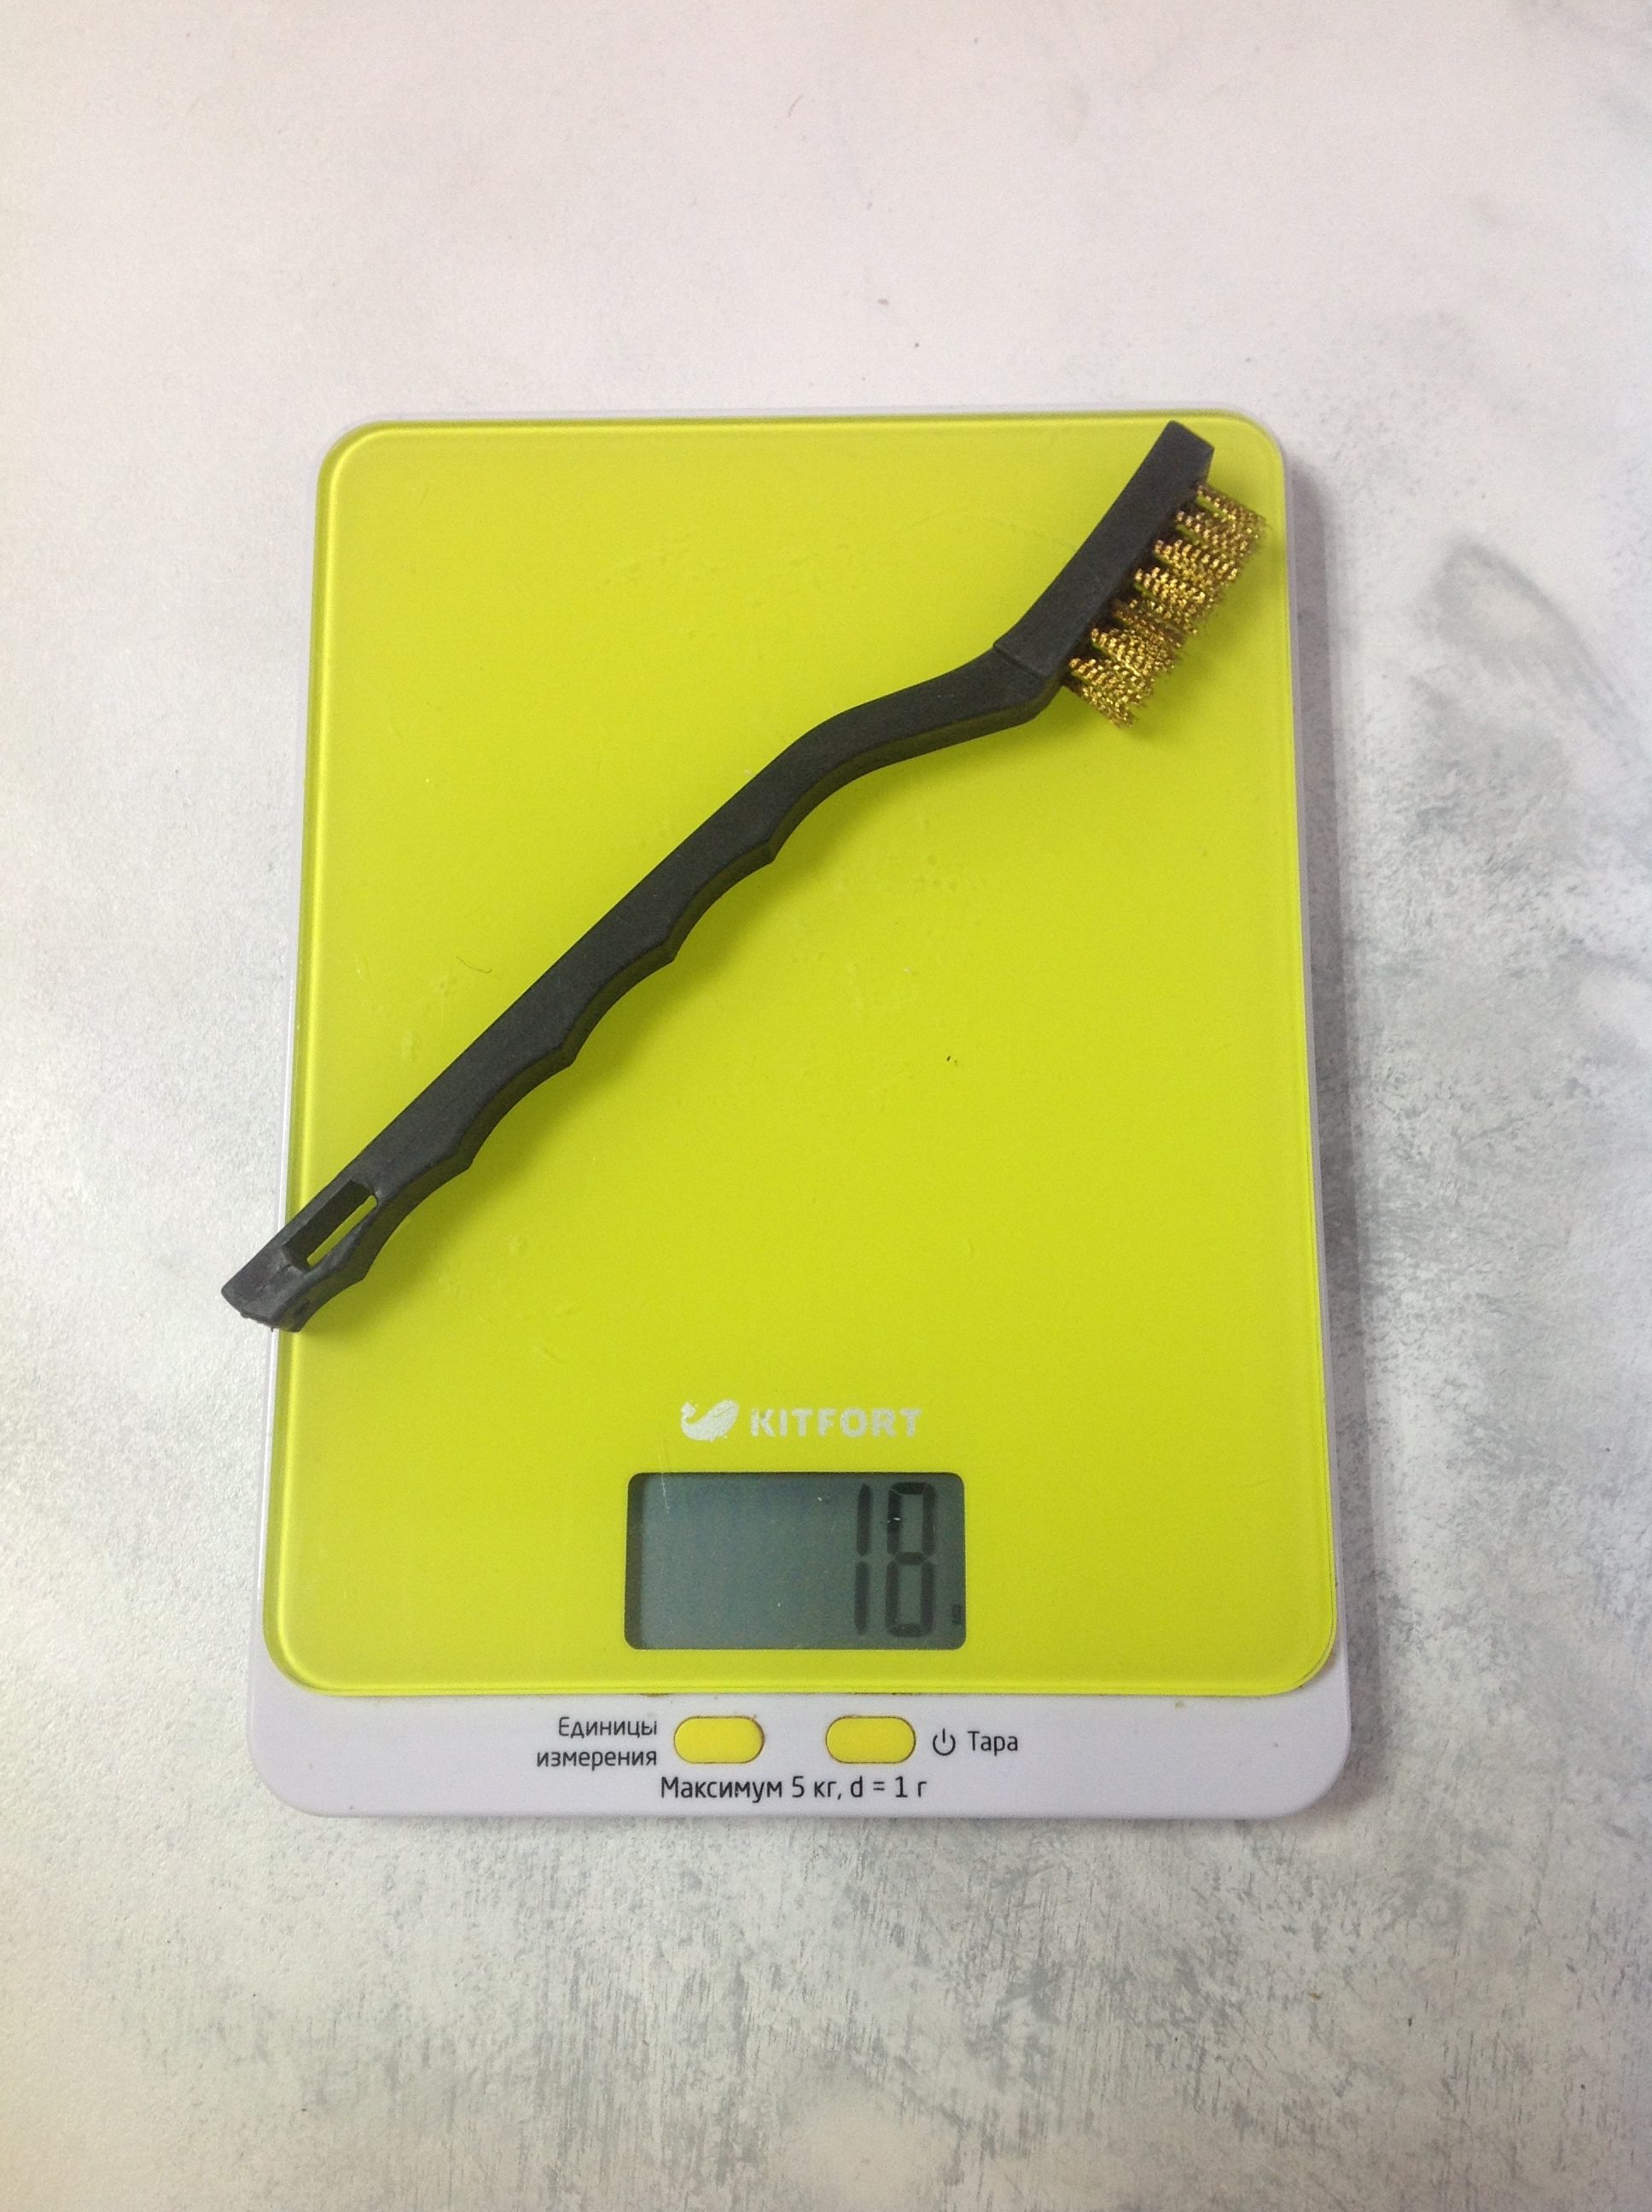 Küçük fırçalama için metal fırça ne kadar ağırlığındadır?